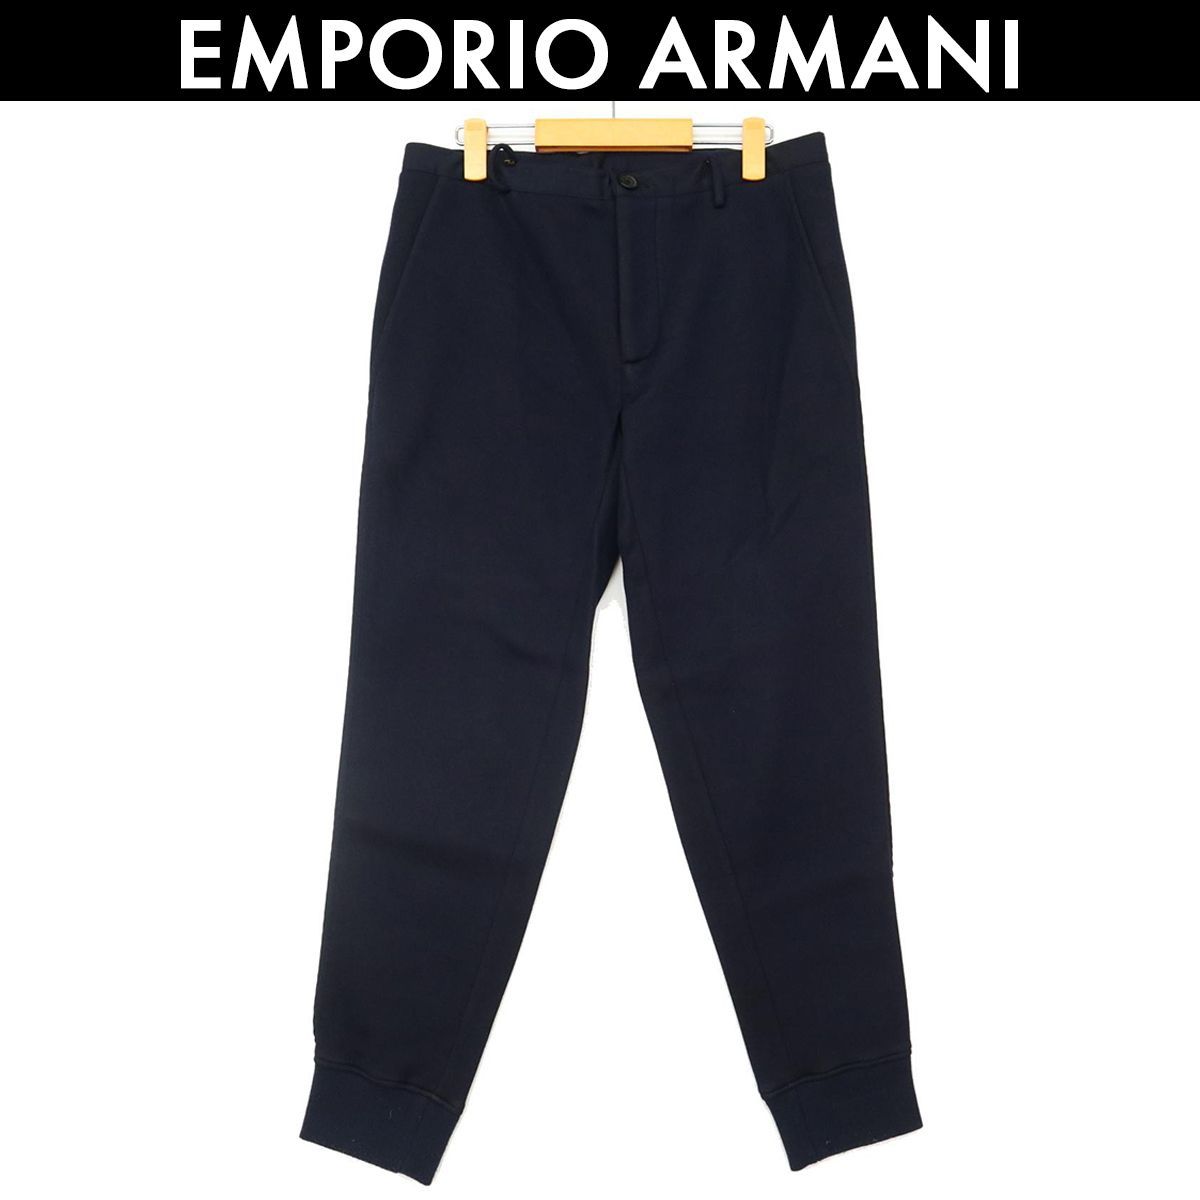 アルマーニ ジョガーパンツ メンズ エンポリオアルマーニ EMPORIO ARMANI ネイビー 紺 サイズ 46 コンディション C